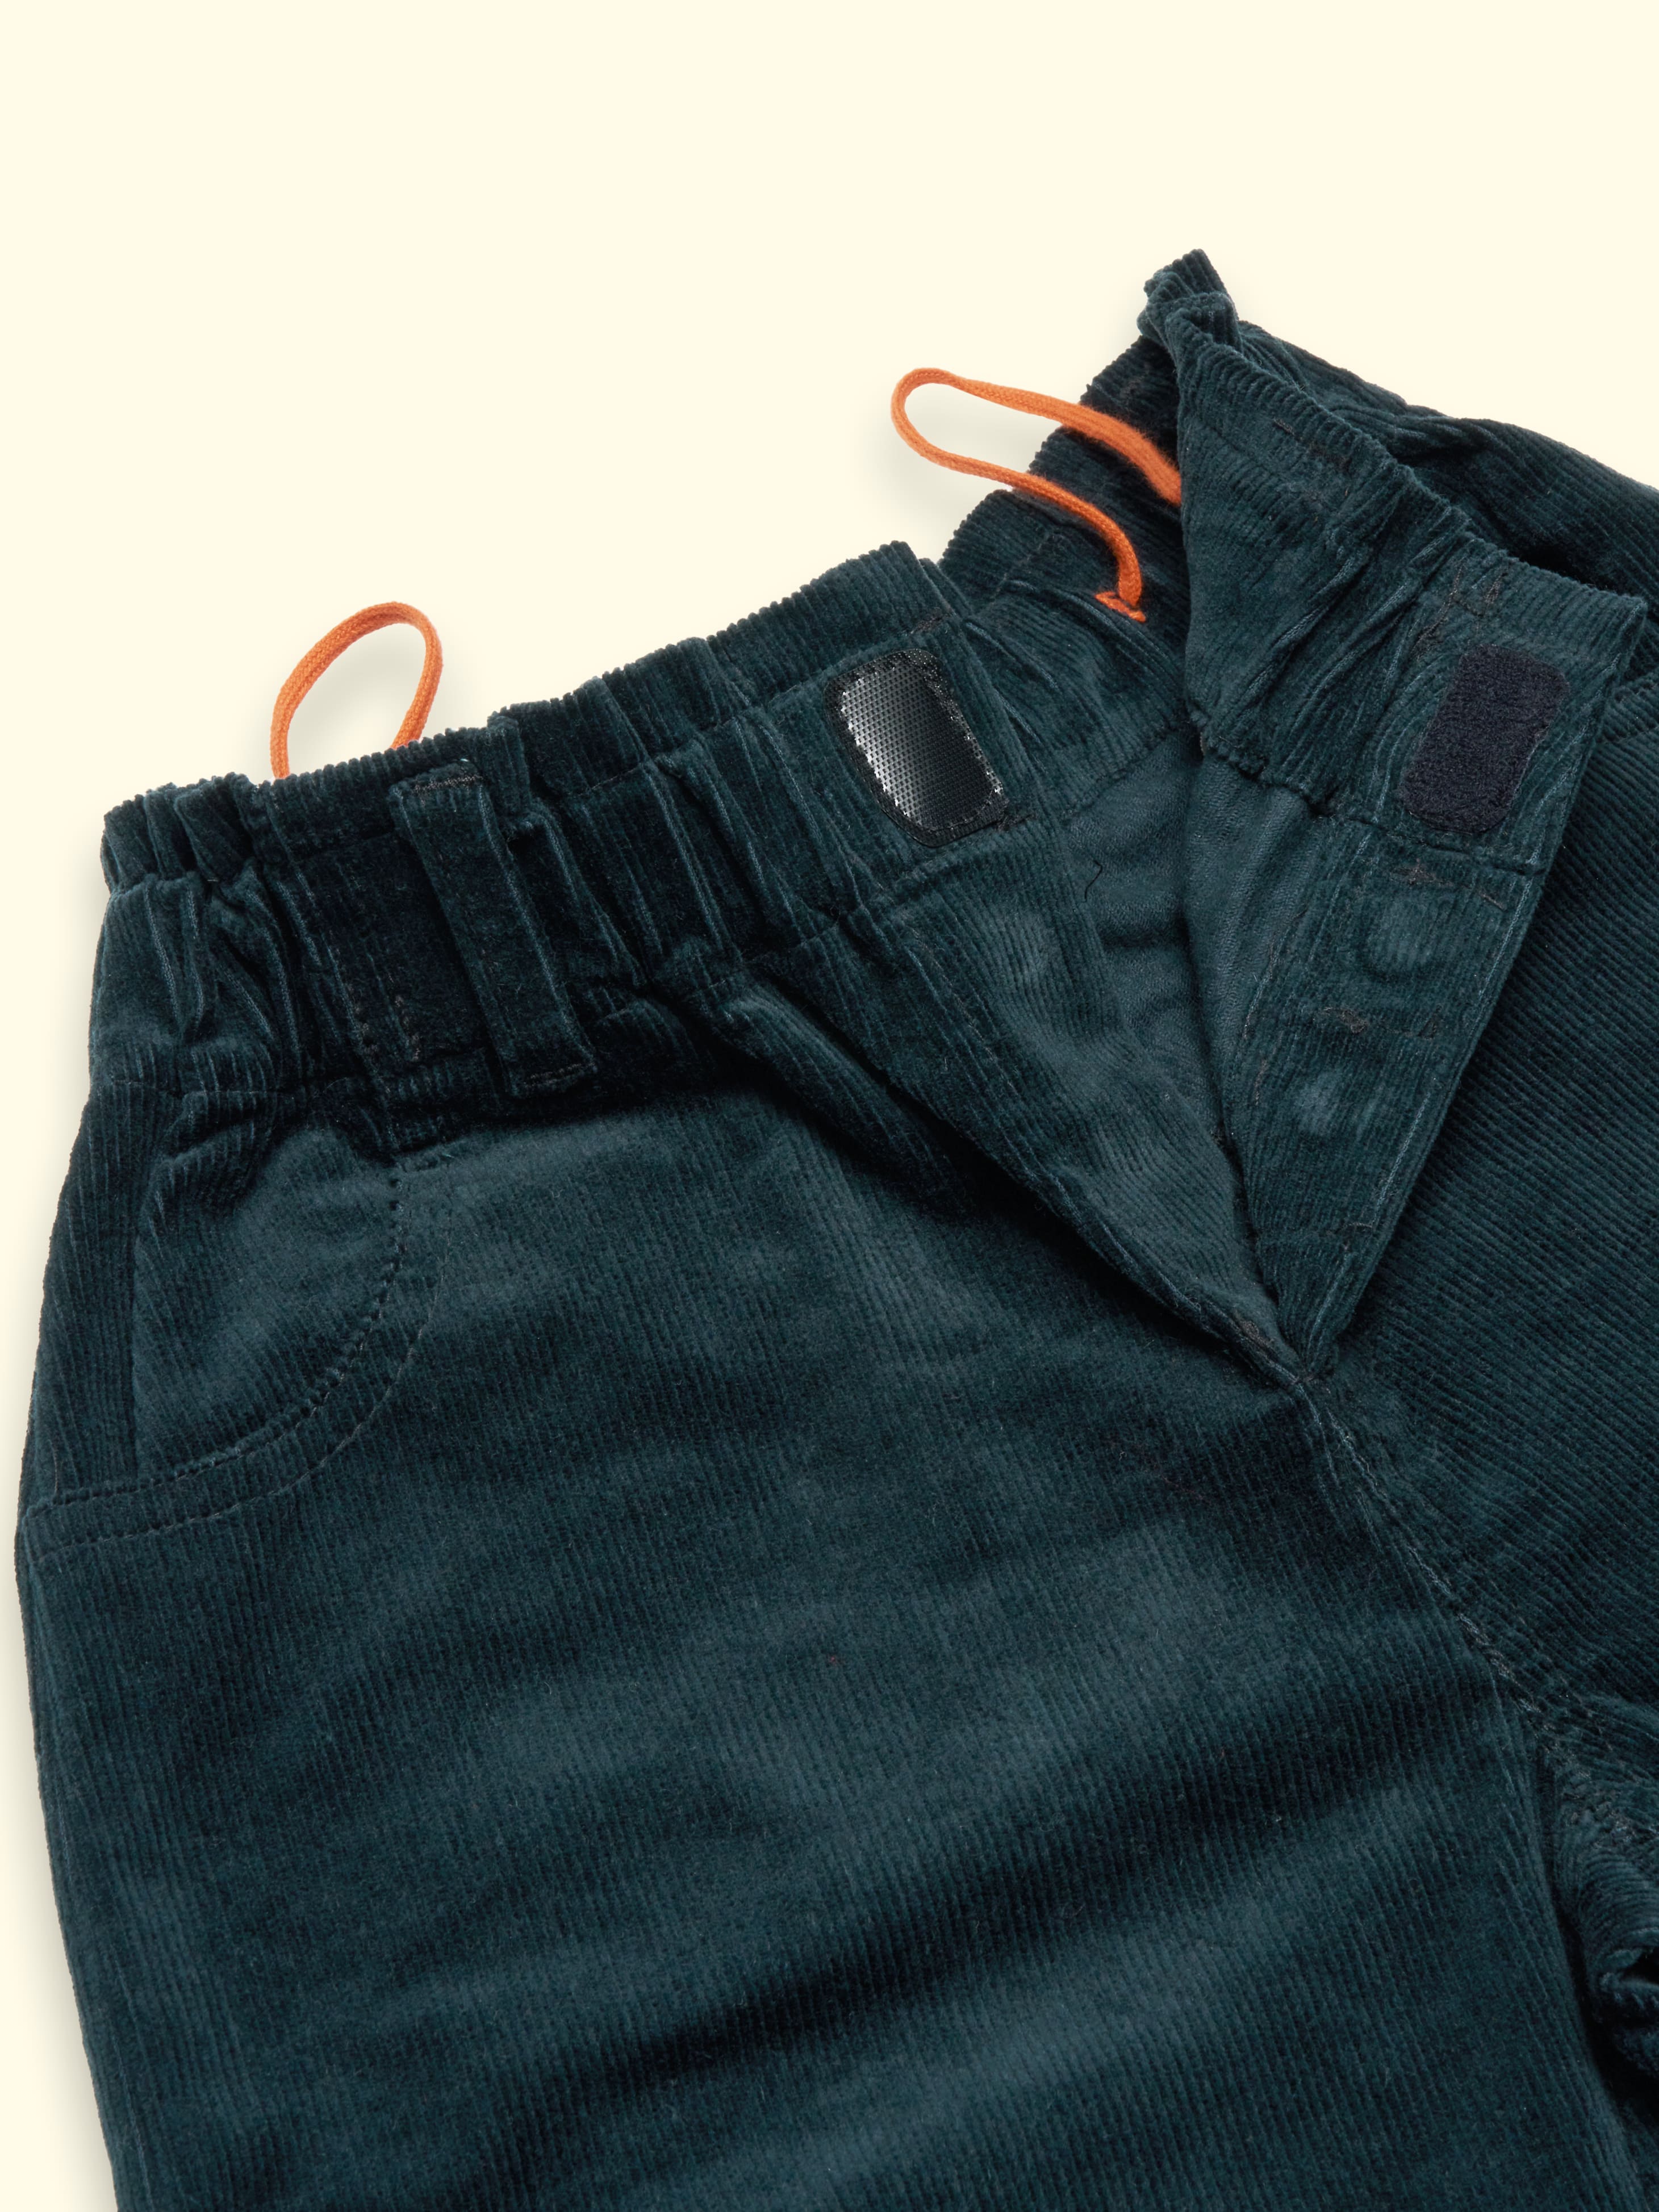 NOUVEAU - Pantalon en velours côtelé Pippo - avec fermeture aimantée et ouverture latérale jusqu'au genou, selon la taille. 140